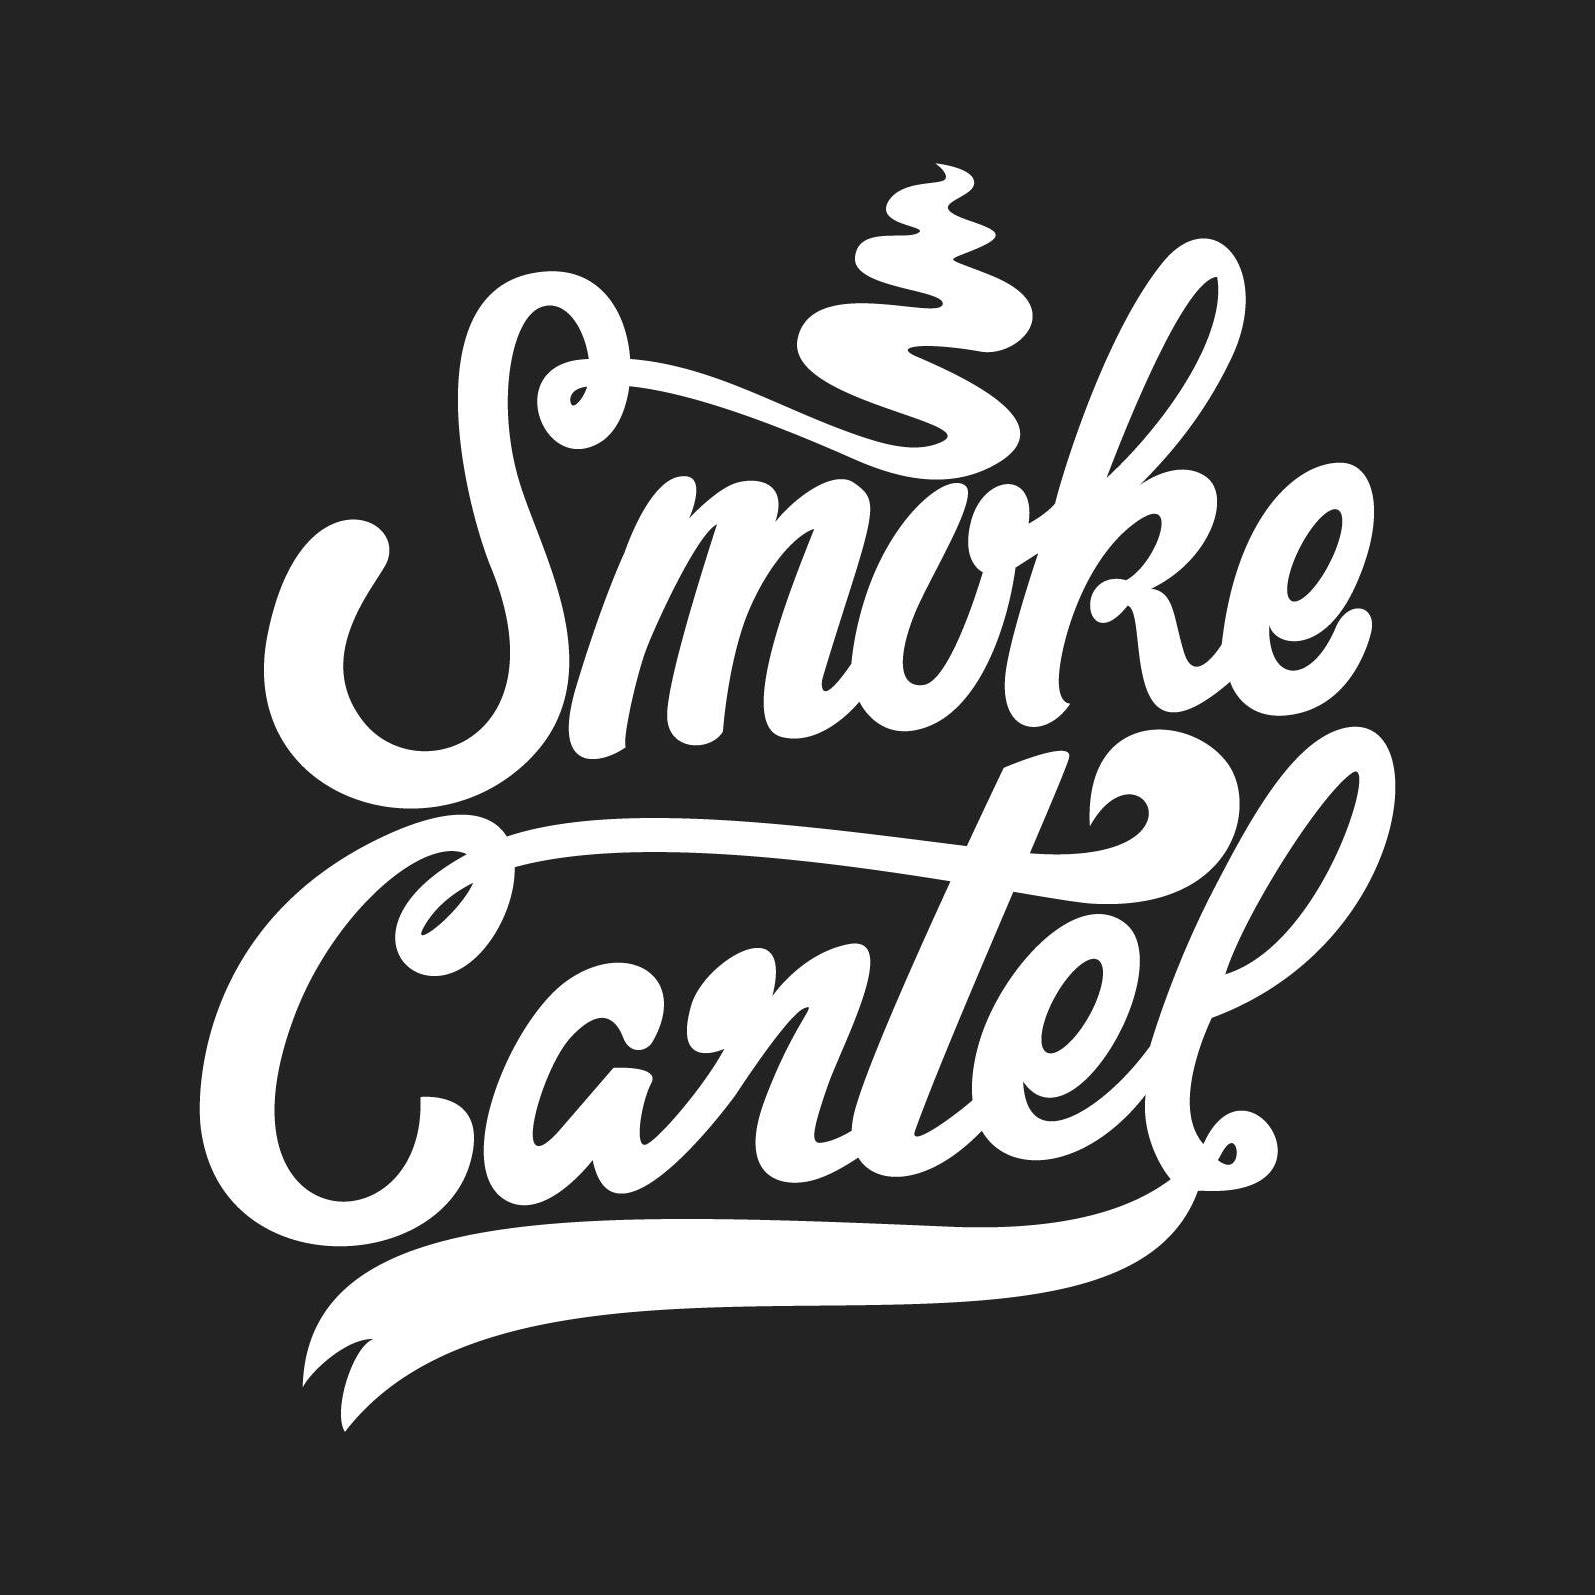 Company logo of Smoke